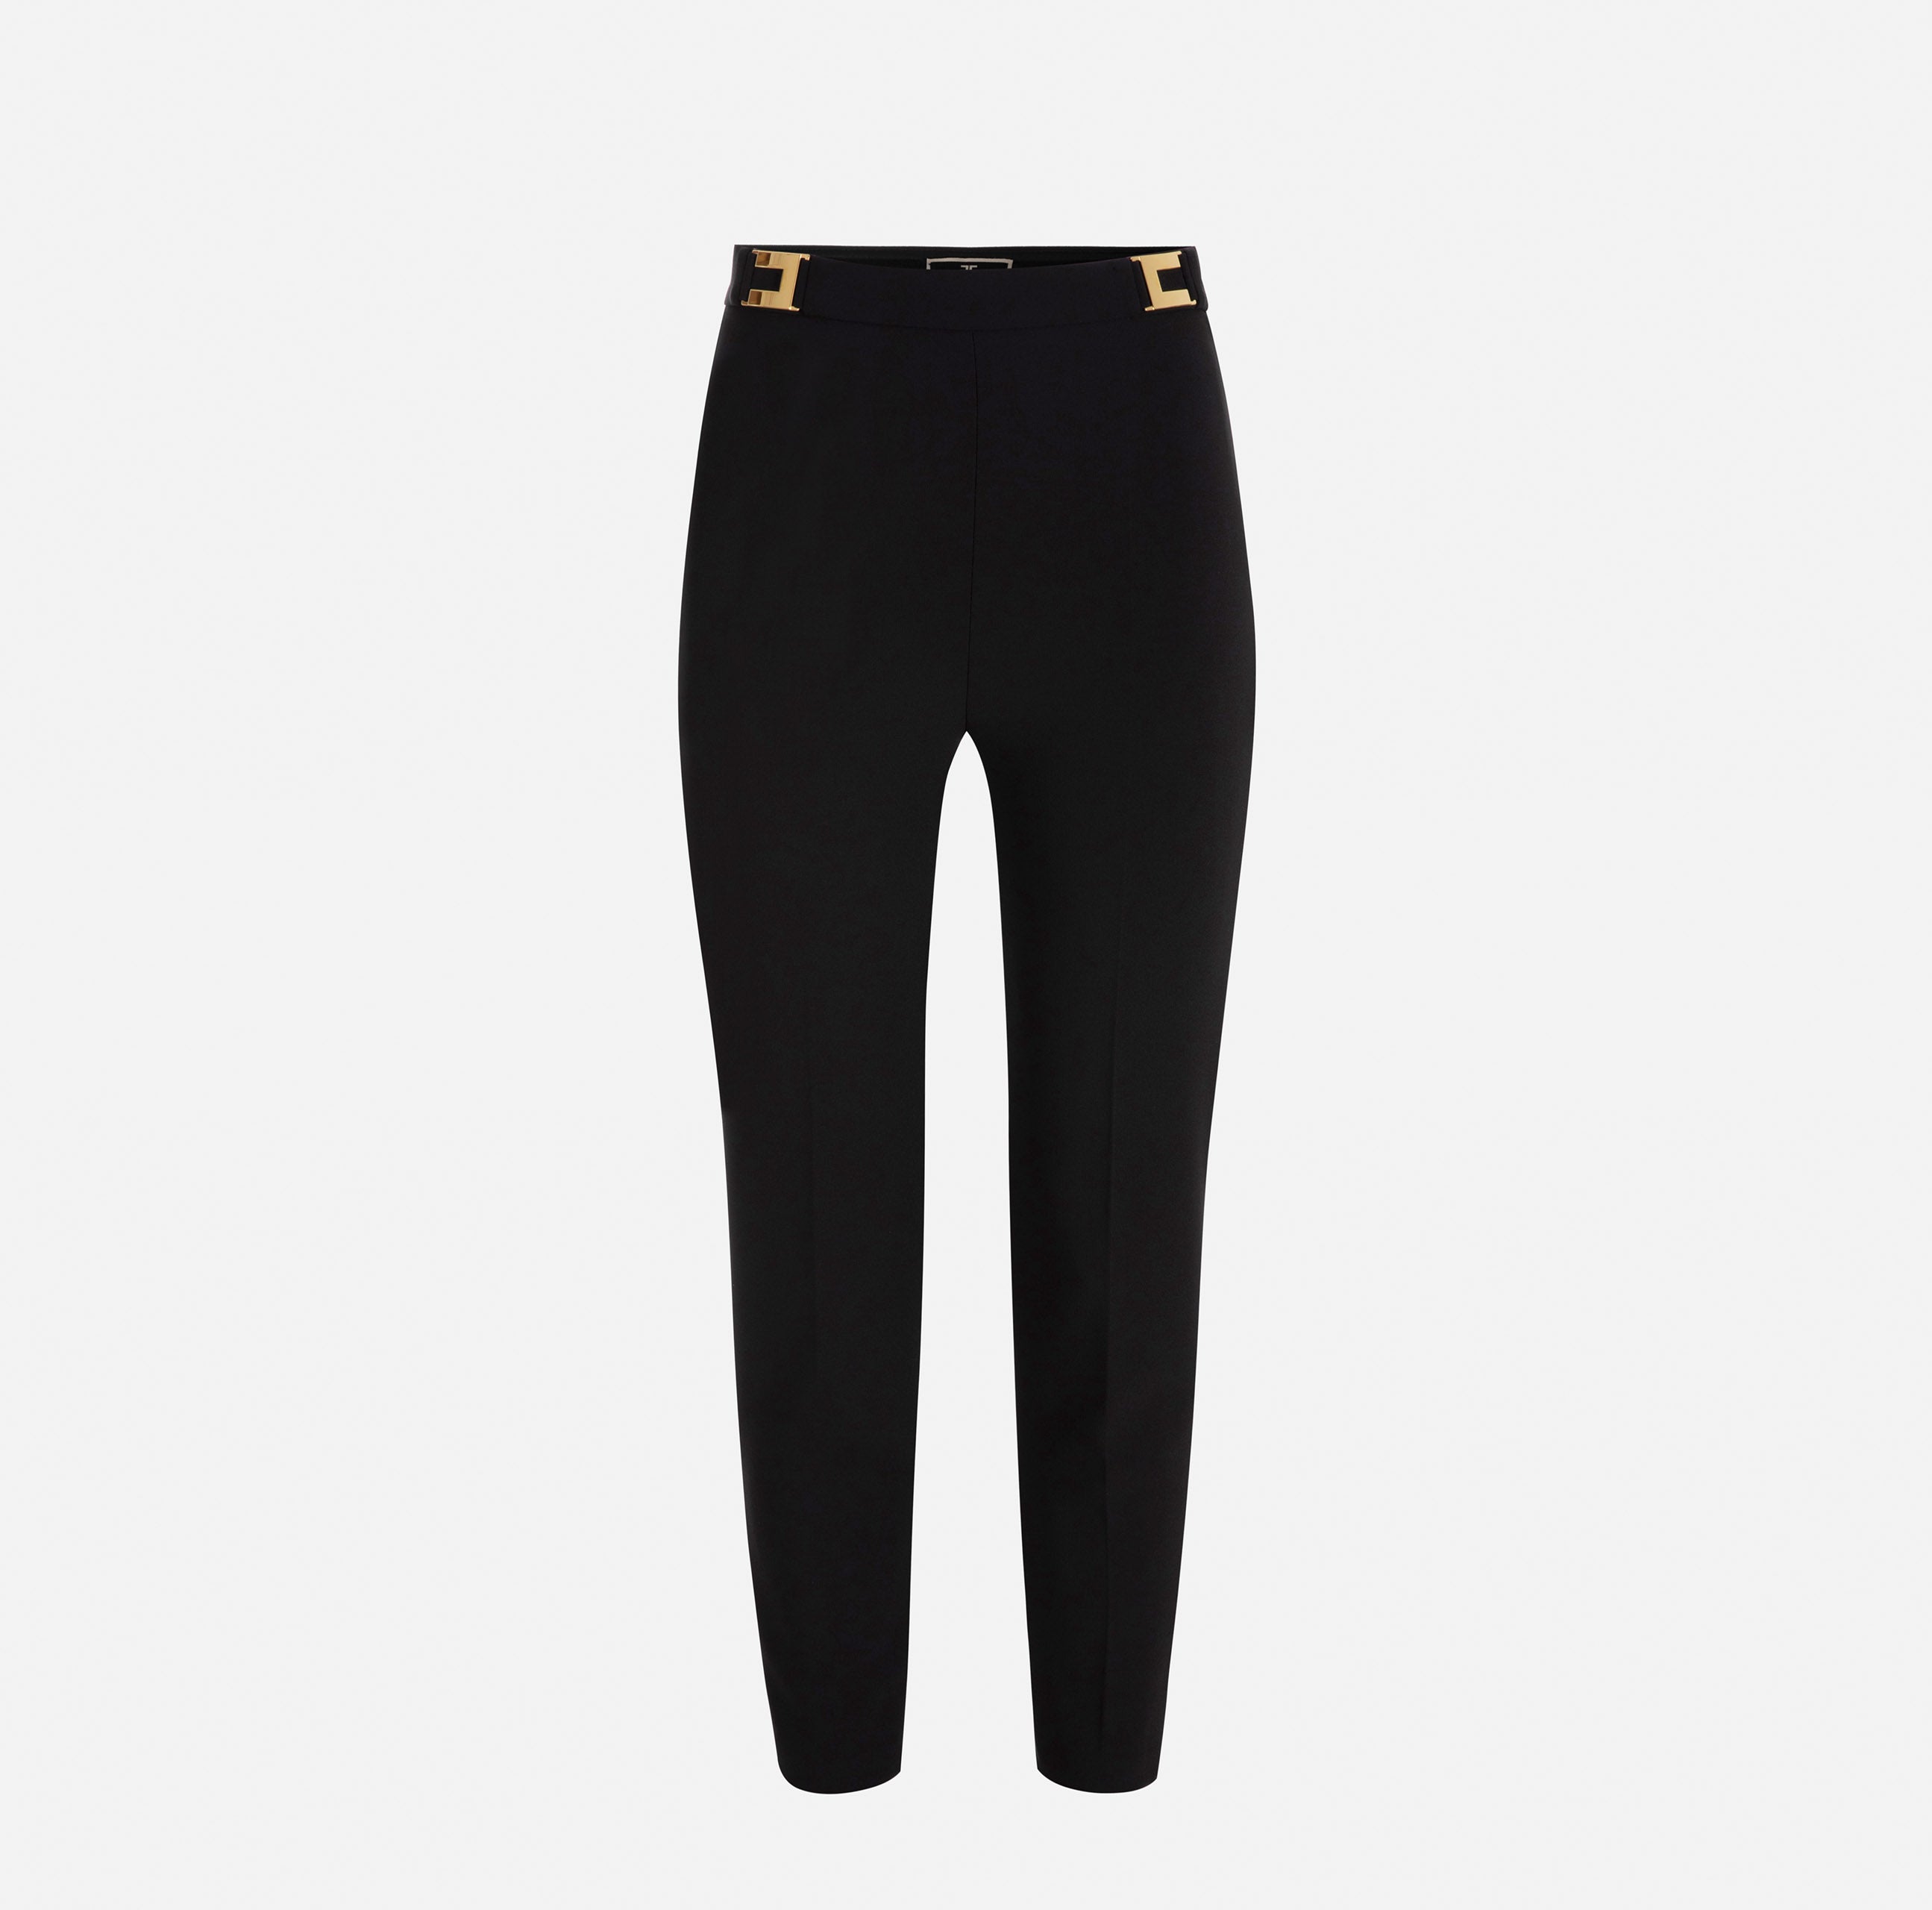 Elisabetta Franchi Women's Trousers PA00536E2 Black